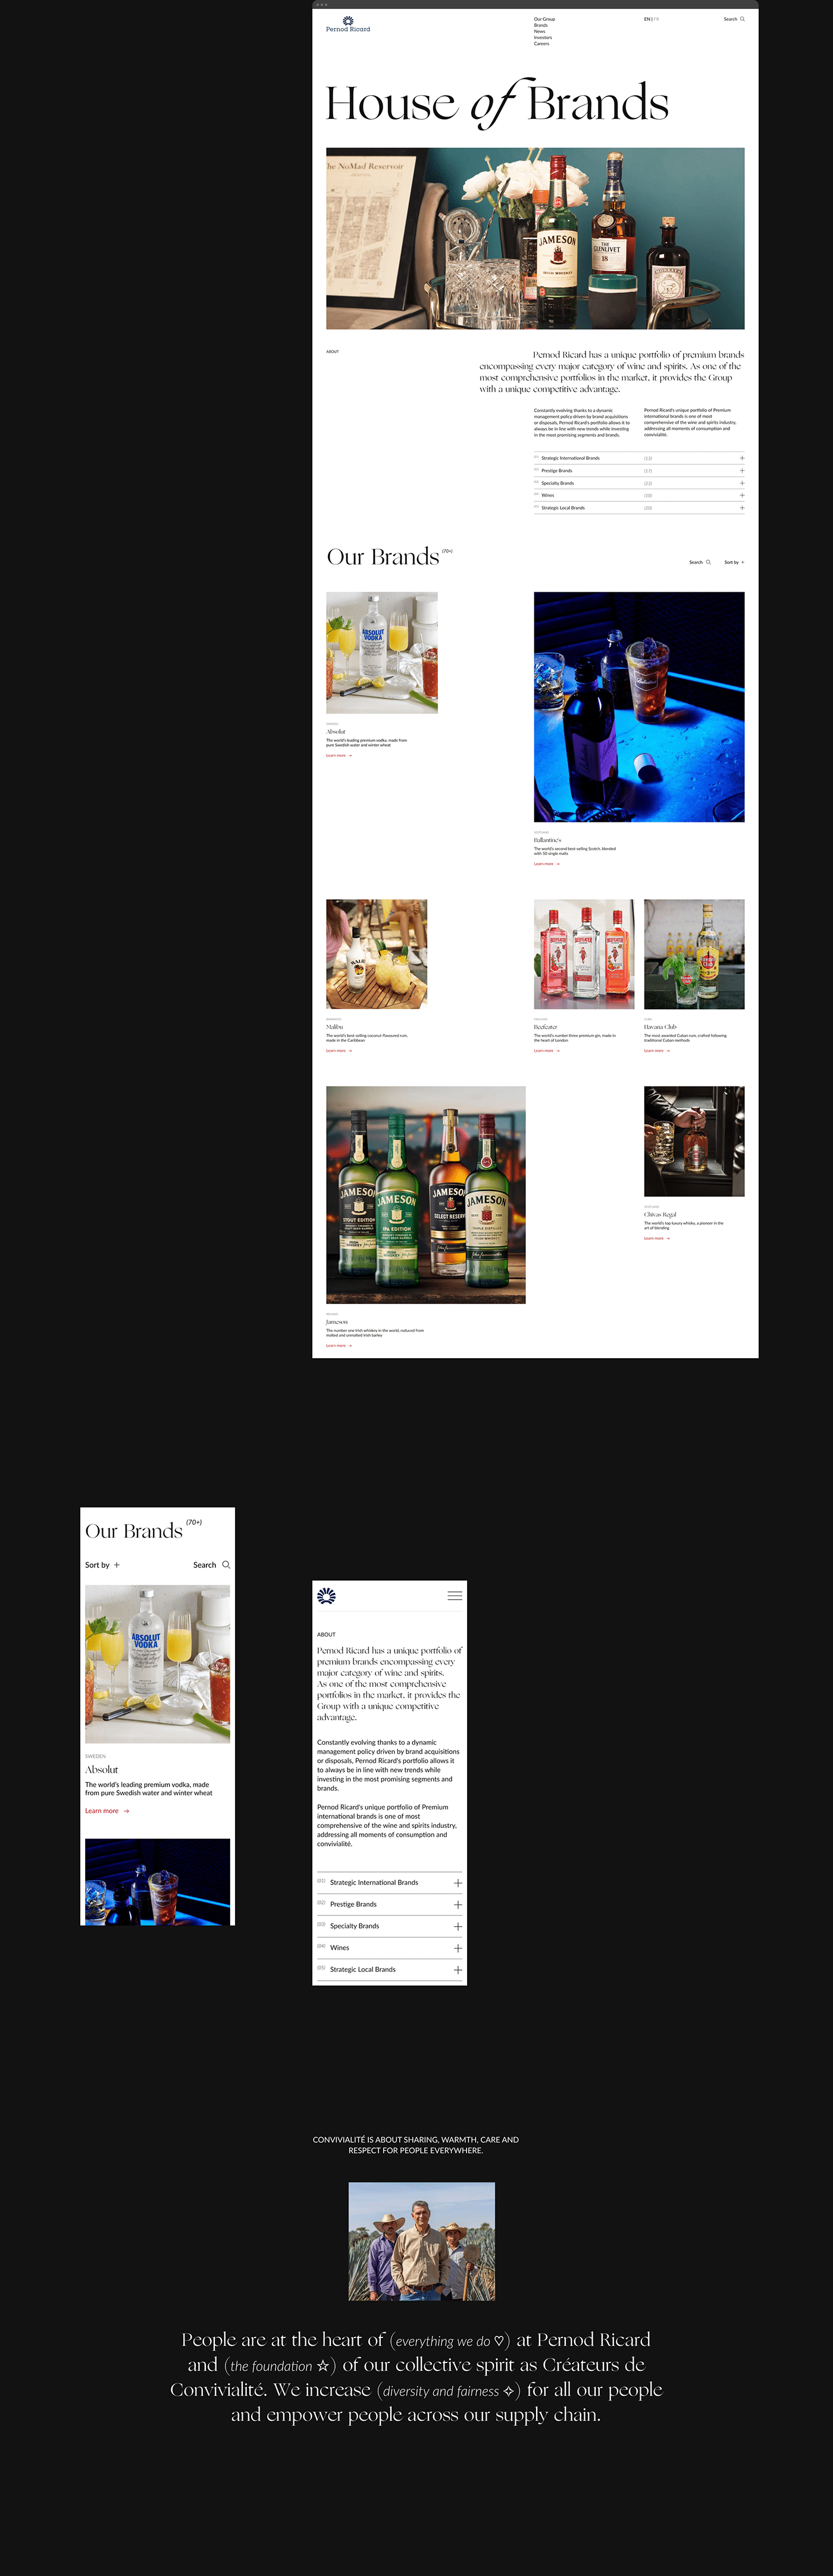 alcohol corporate design Figma UI uprock ux Web Design  Website minimal